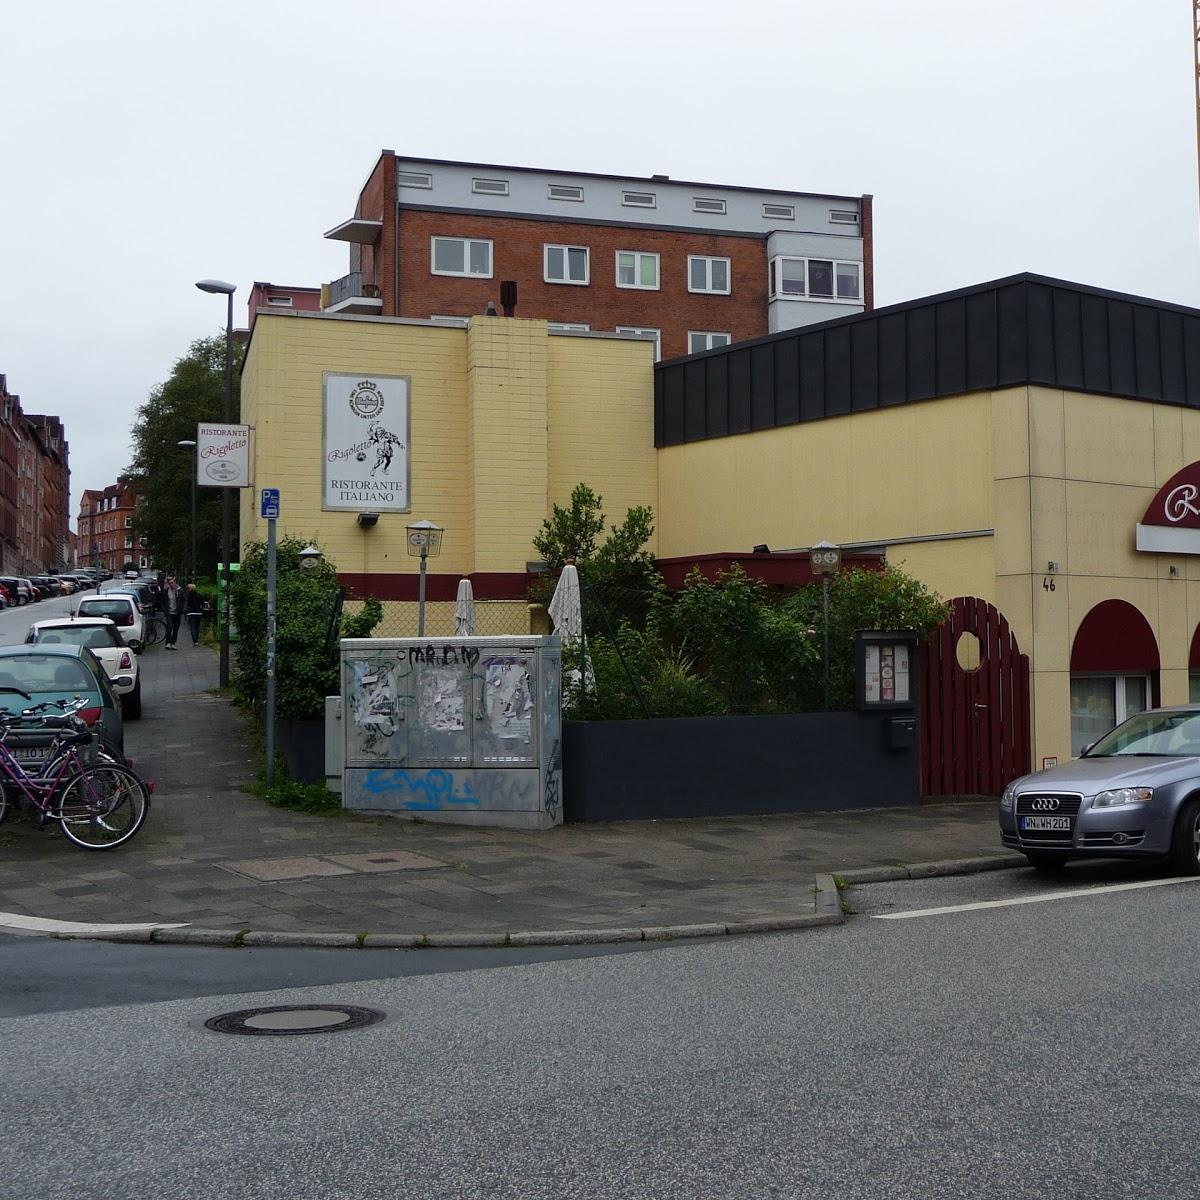 Restaurant "Señor Jalapeño" in  Kiel